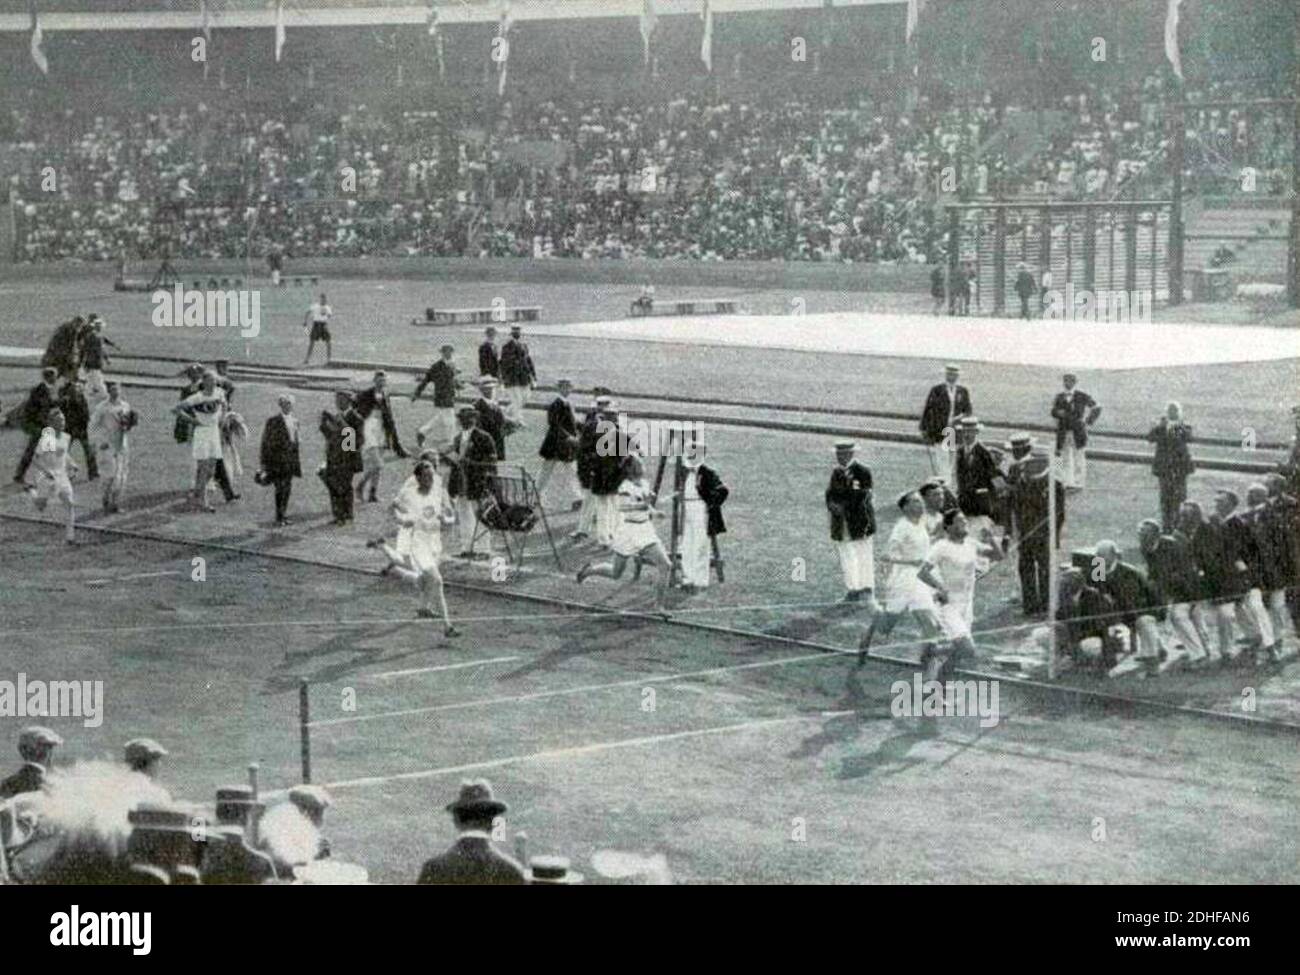 La finale du 800 mètres des Jeux olympiques de 1912. Foto Stock